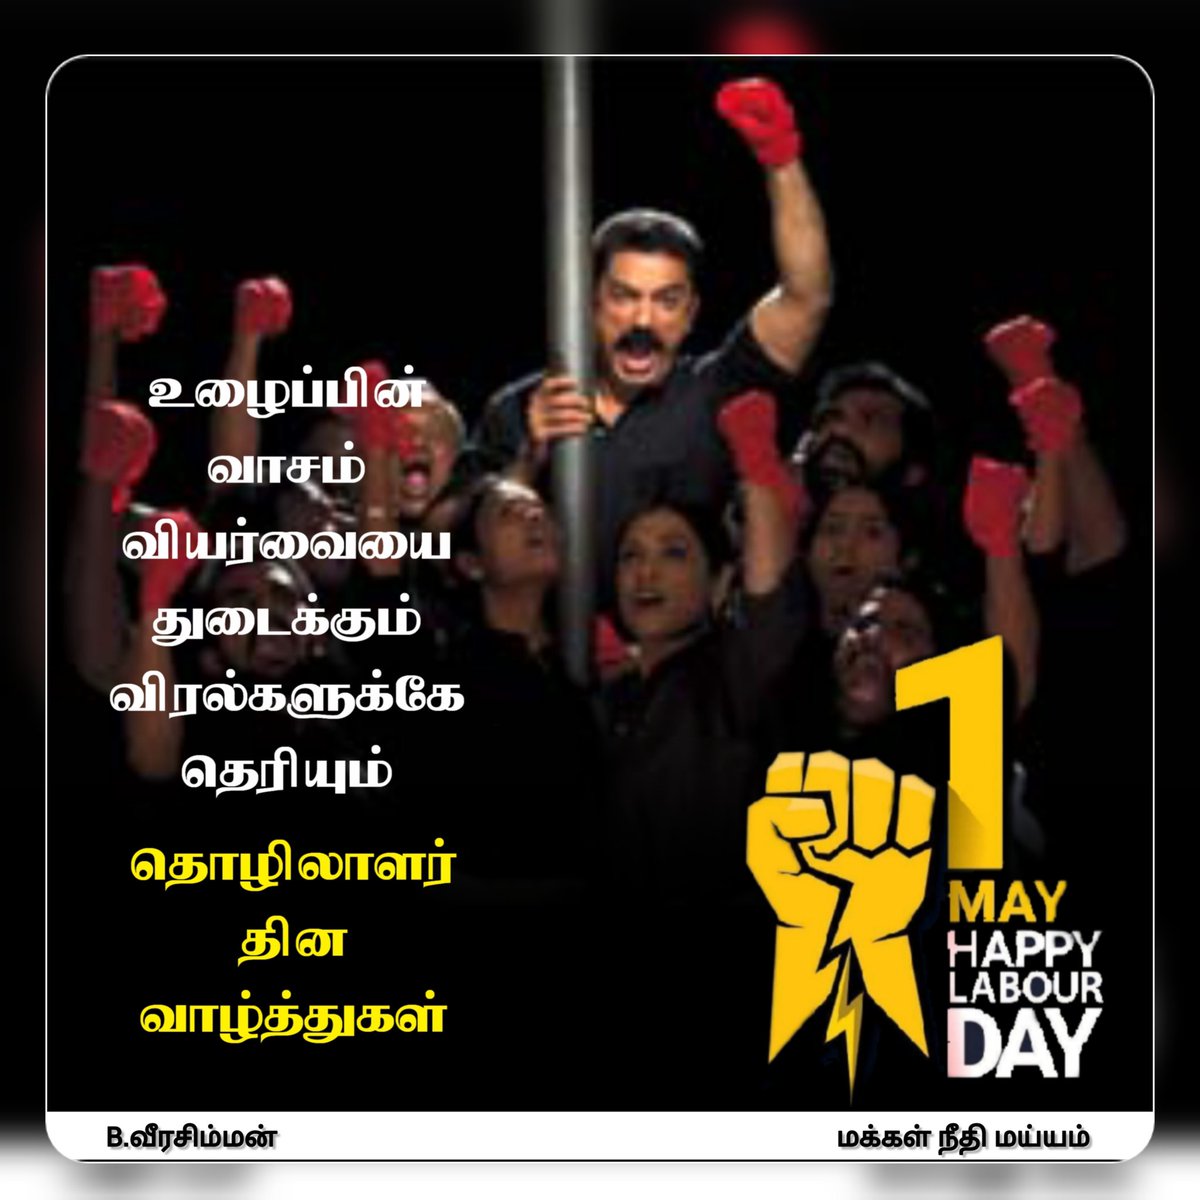 மே தின நல்வாழ்த்துக்கள்..! | #Mayday | #LaboursDay | #மேதினம் | #KamalHaasan #Makkalneedhimaiam